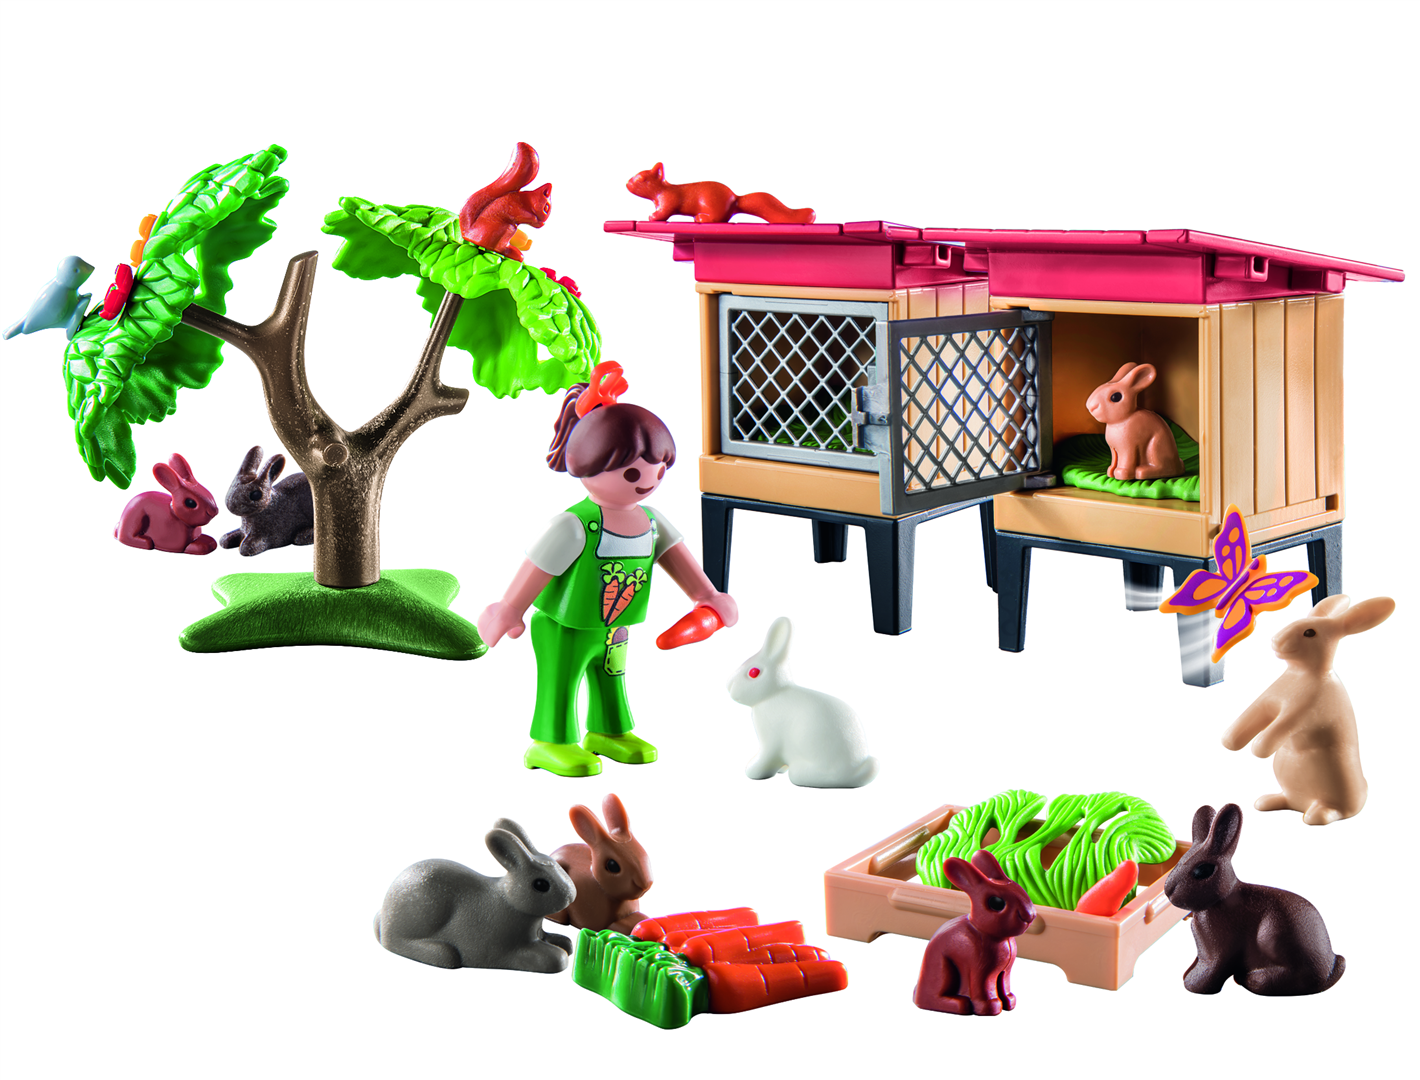 Playmobil country 71252 recinto dei conigli per bambini dai 4 anni in su - Playmobil